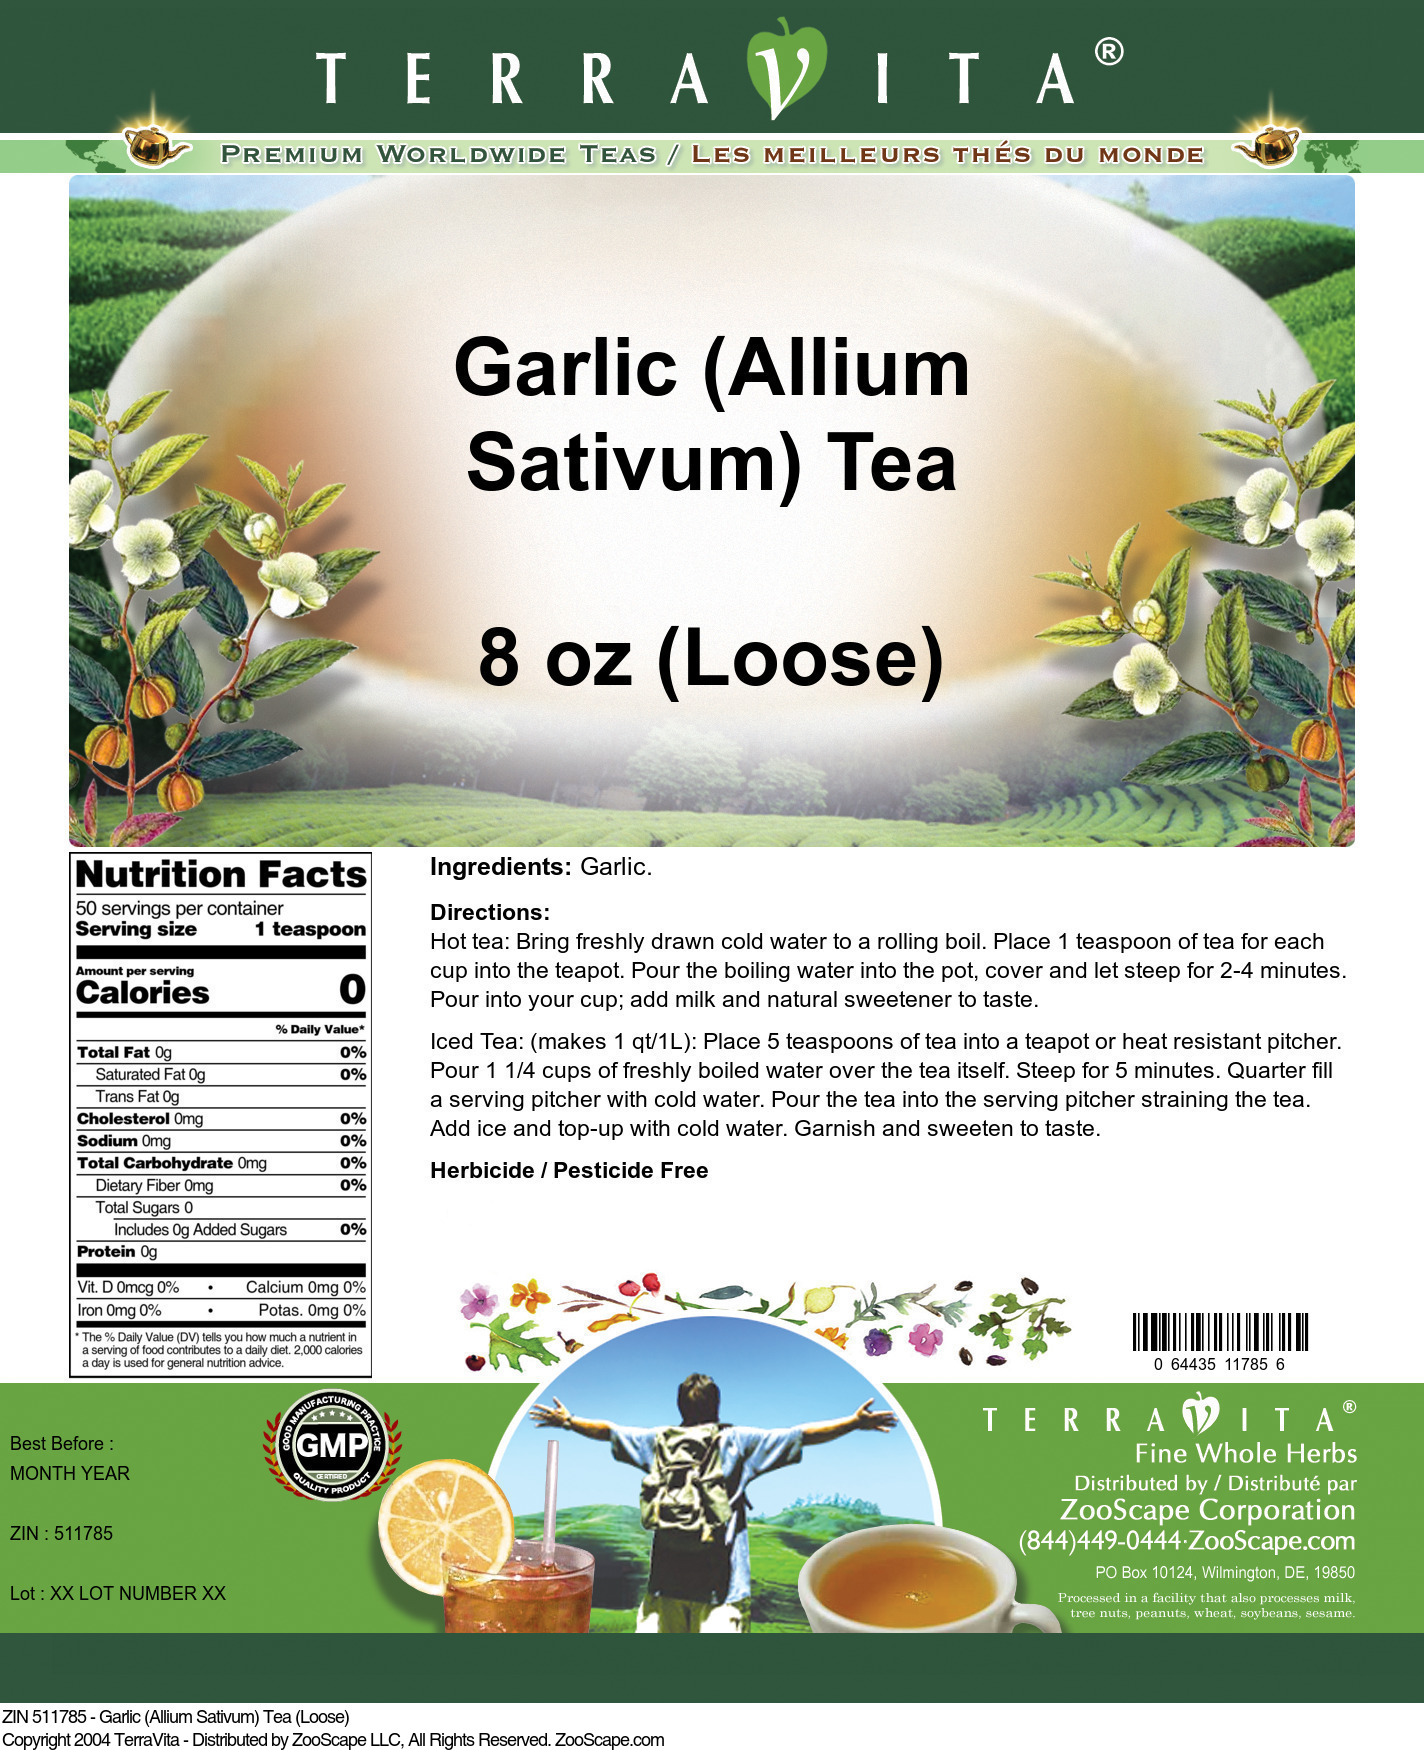 Garlic (Allium Sativum) Tea (Loose) - Label